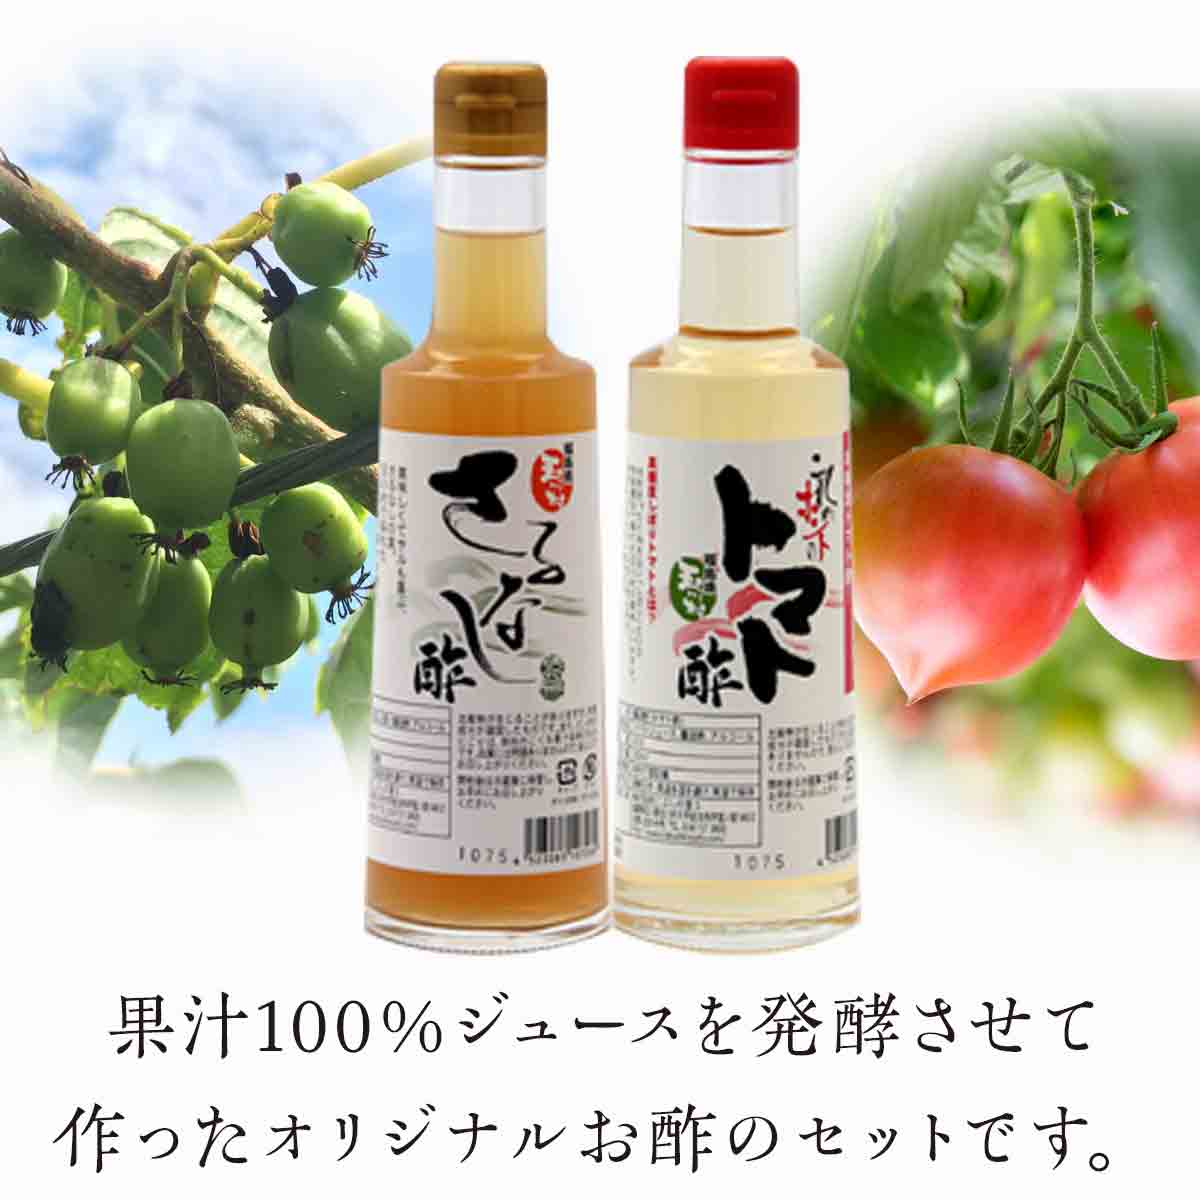 ふるさと納税 FT18-017 流行のアイテム 玉川村野菜のお酢セット 返品送料無料